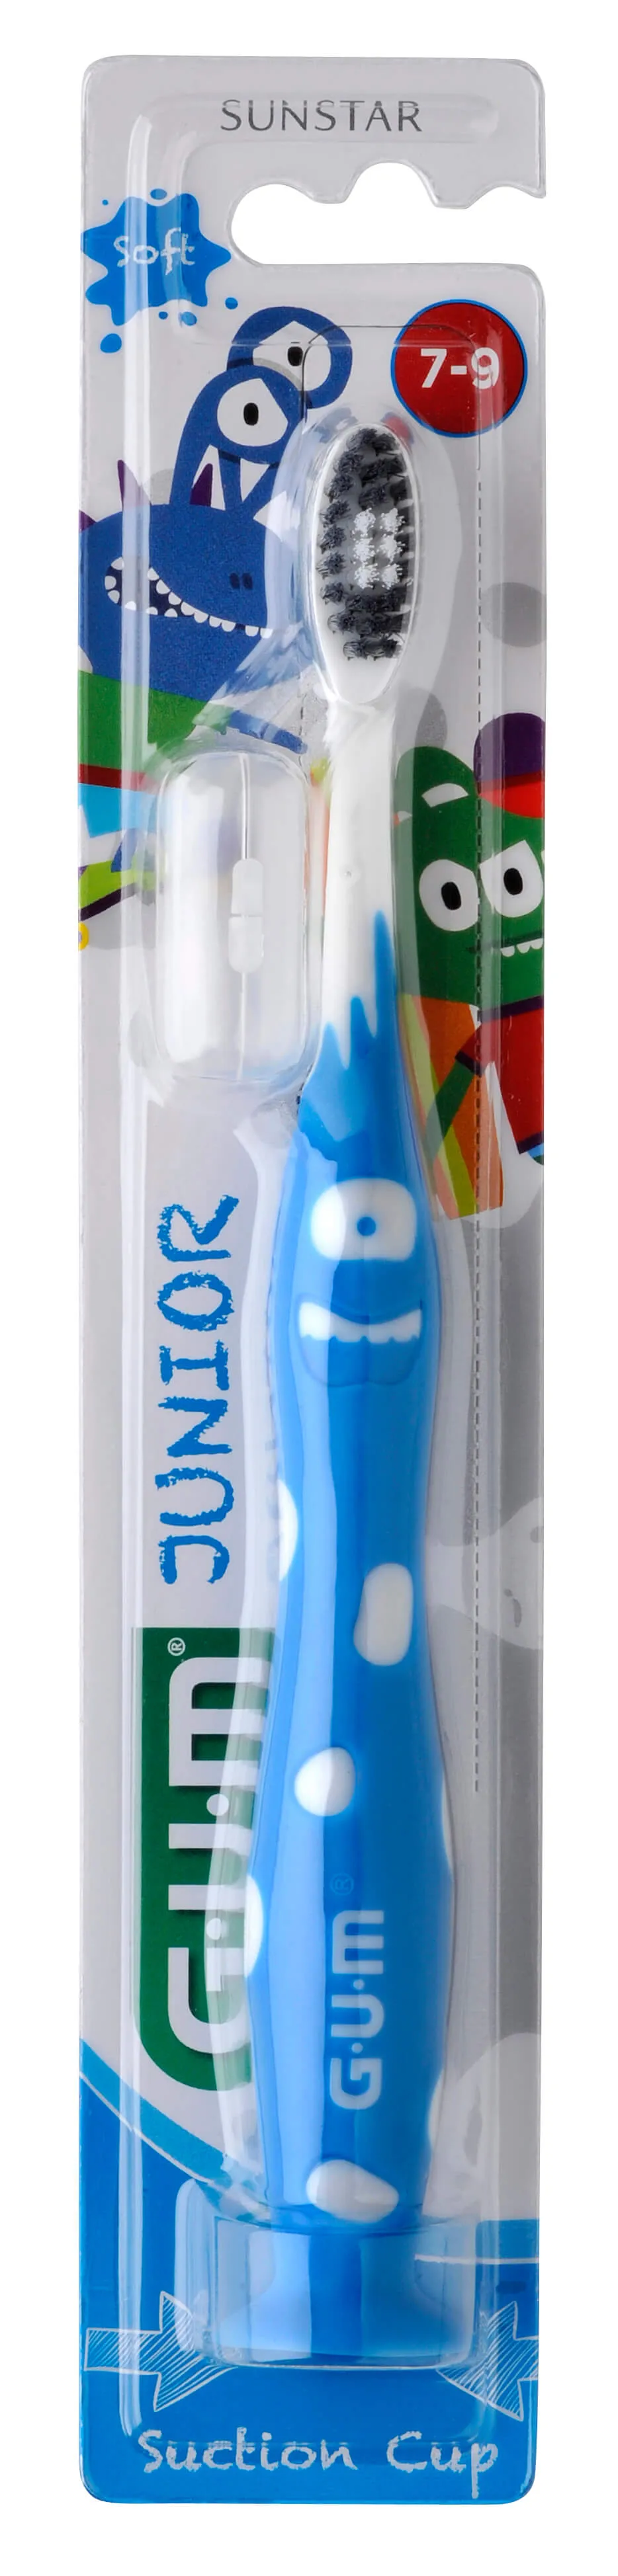 Sunstar Gum Monster Junior, szczoteczka do zębów dla dzieci w wieku 7-9 lat, miękka, 1 sztuka 